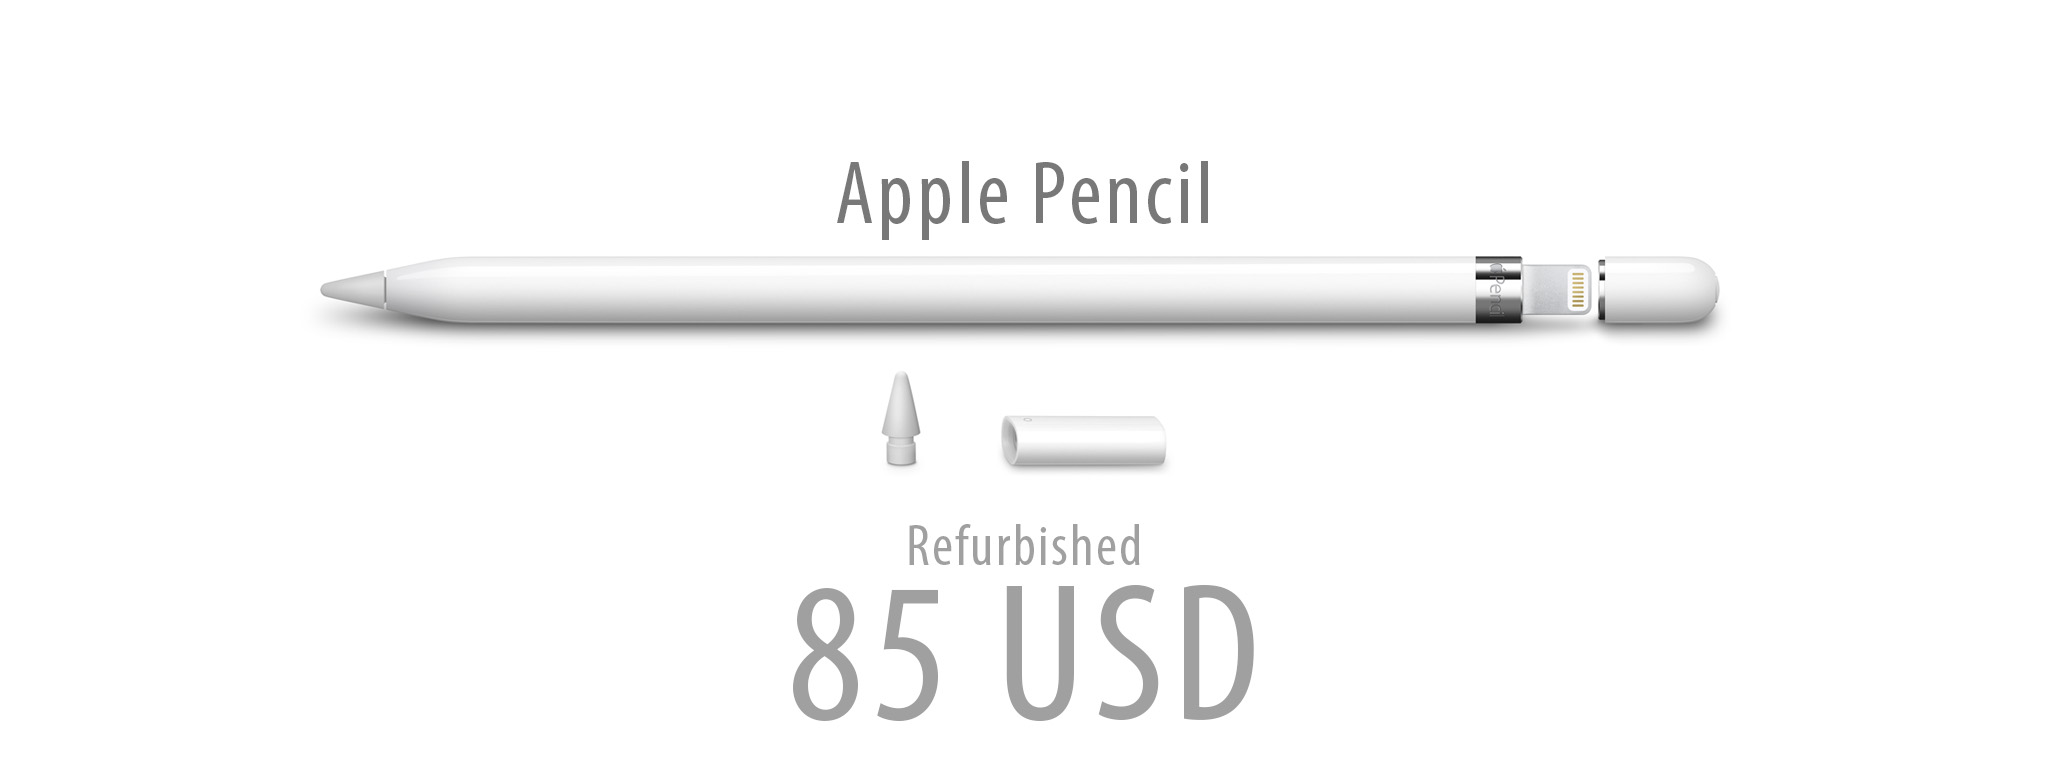 Apple bắt đầu bán Apple Pencil hàng Refurbished, giá 85 USD (giá gốc 99 USD)